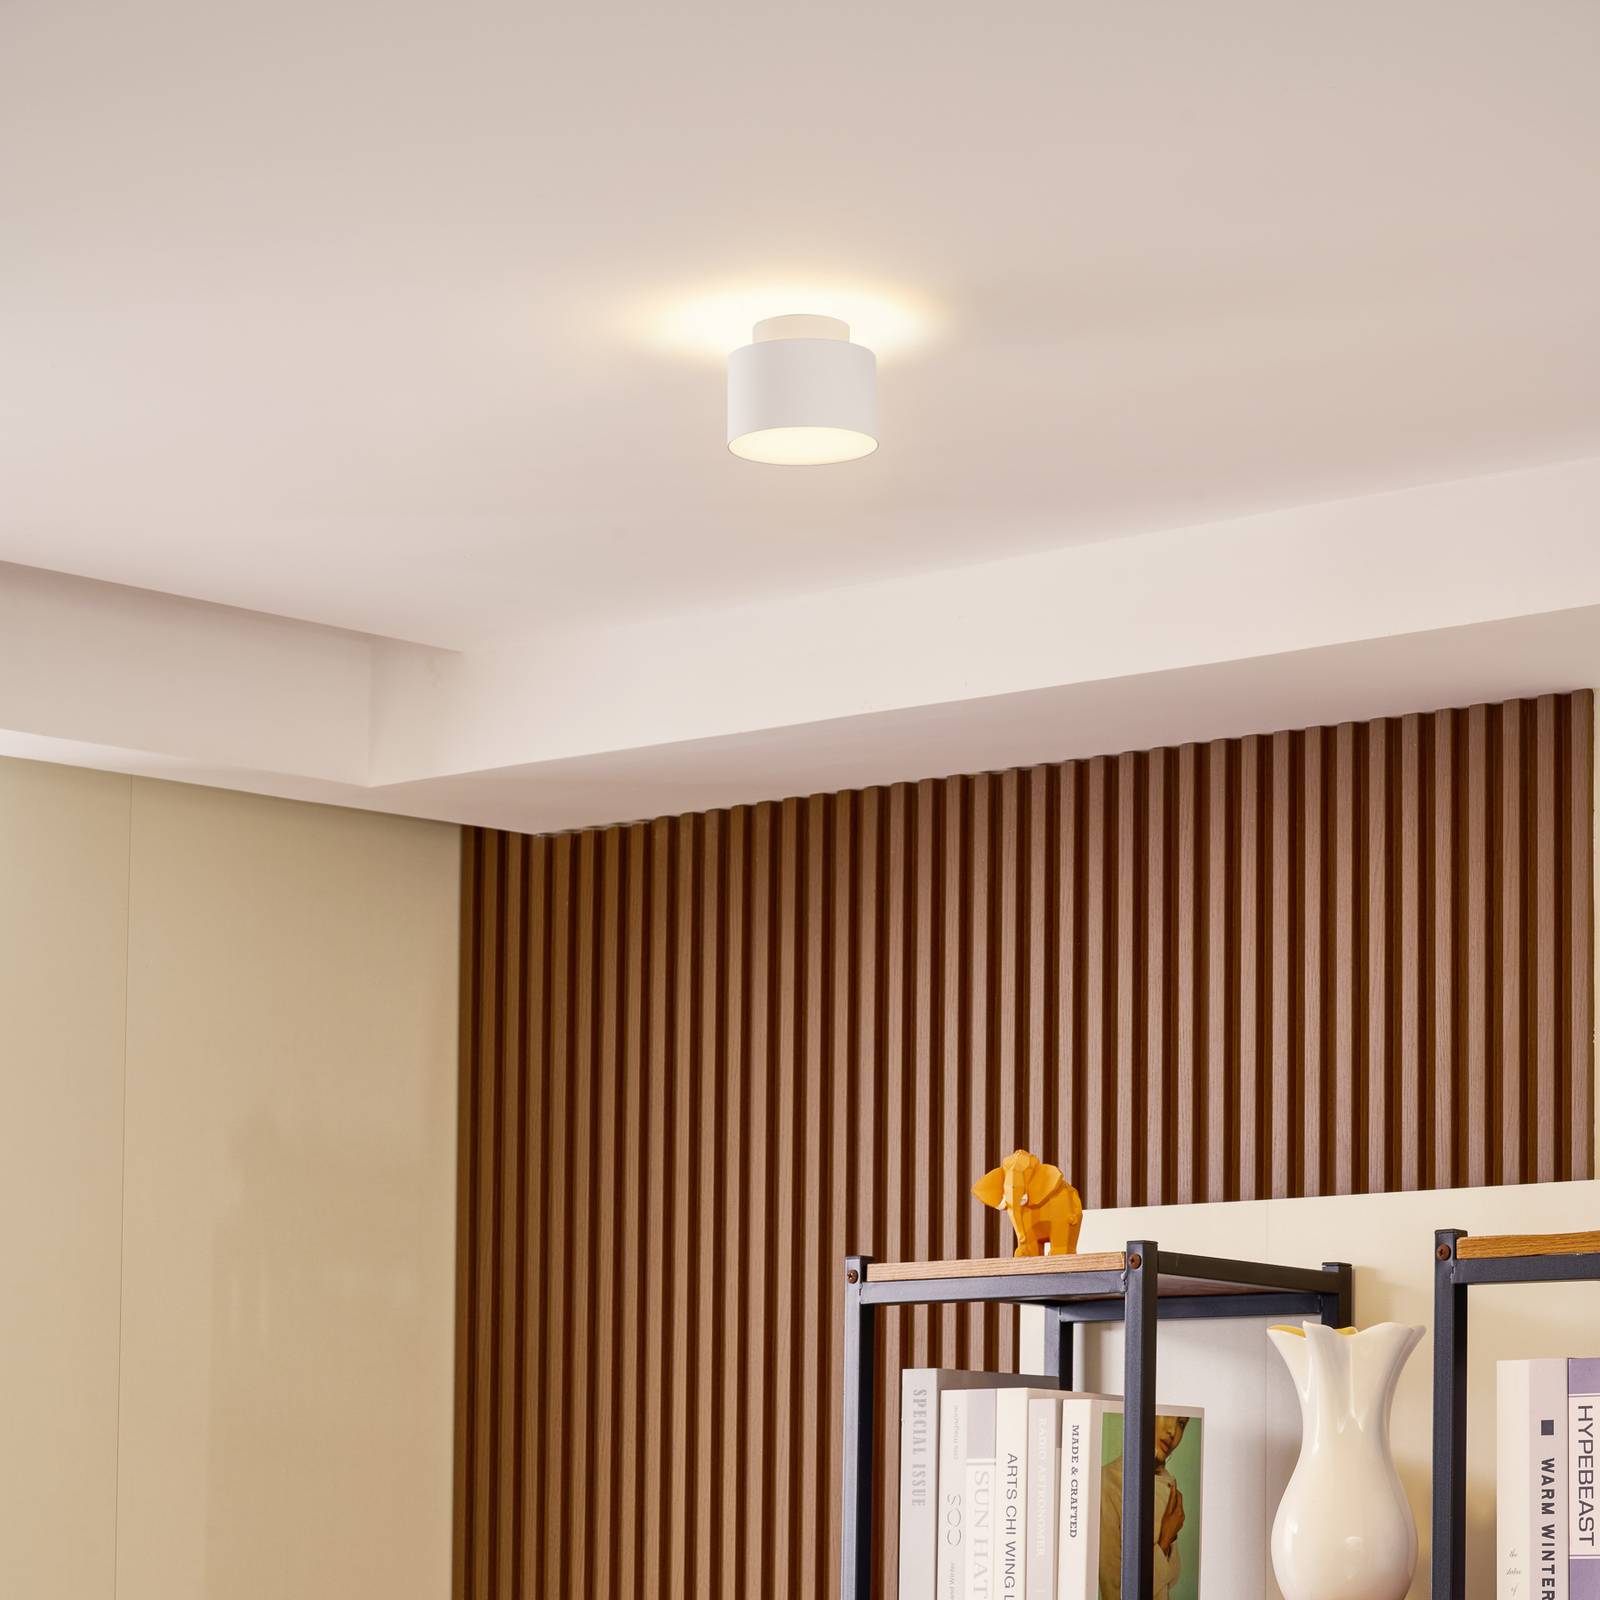 Lindby LED reflektor Nivoria, 11 x 8,8 cm, pieskovo biely, hliník